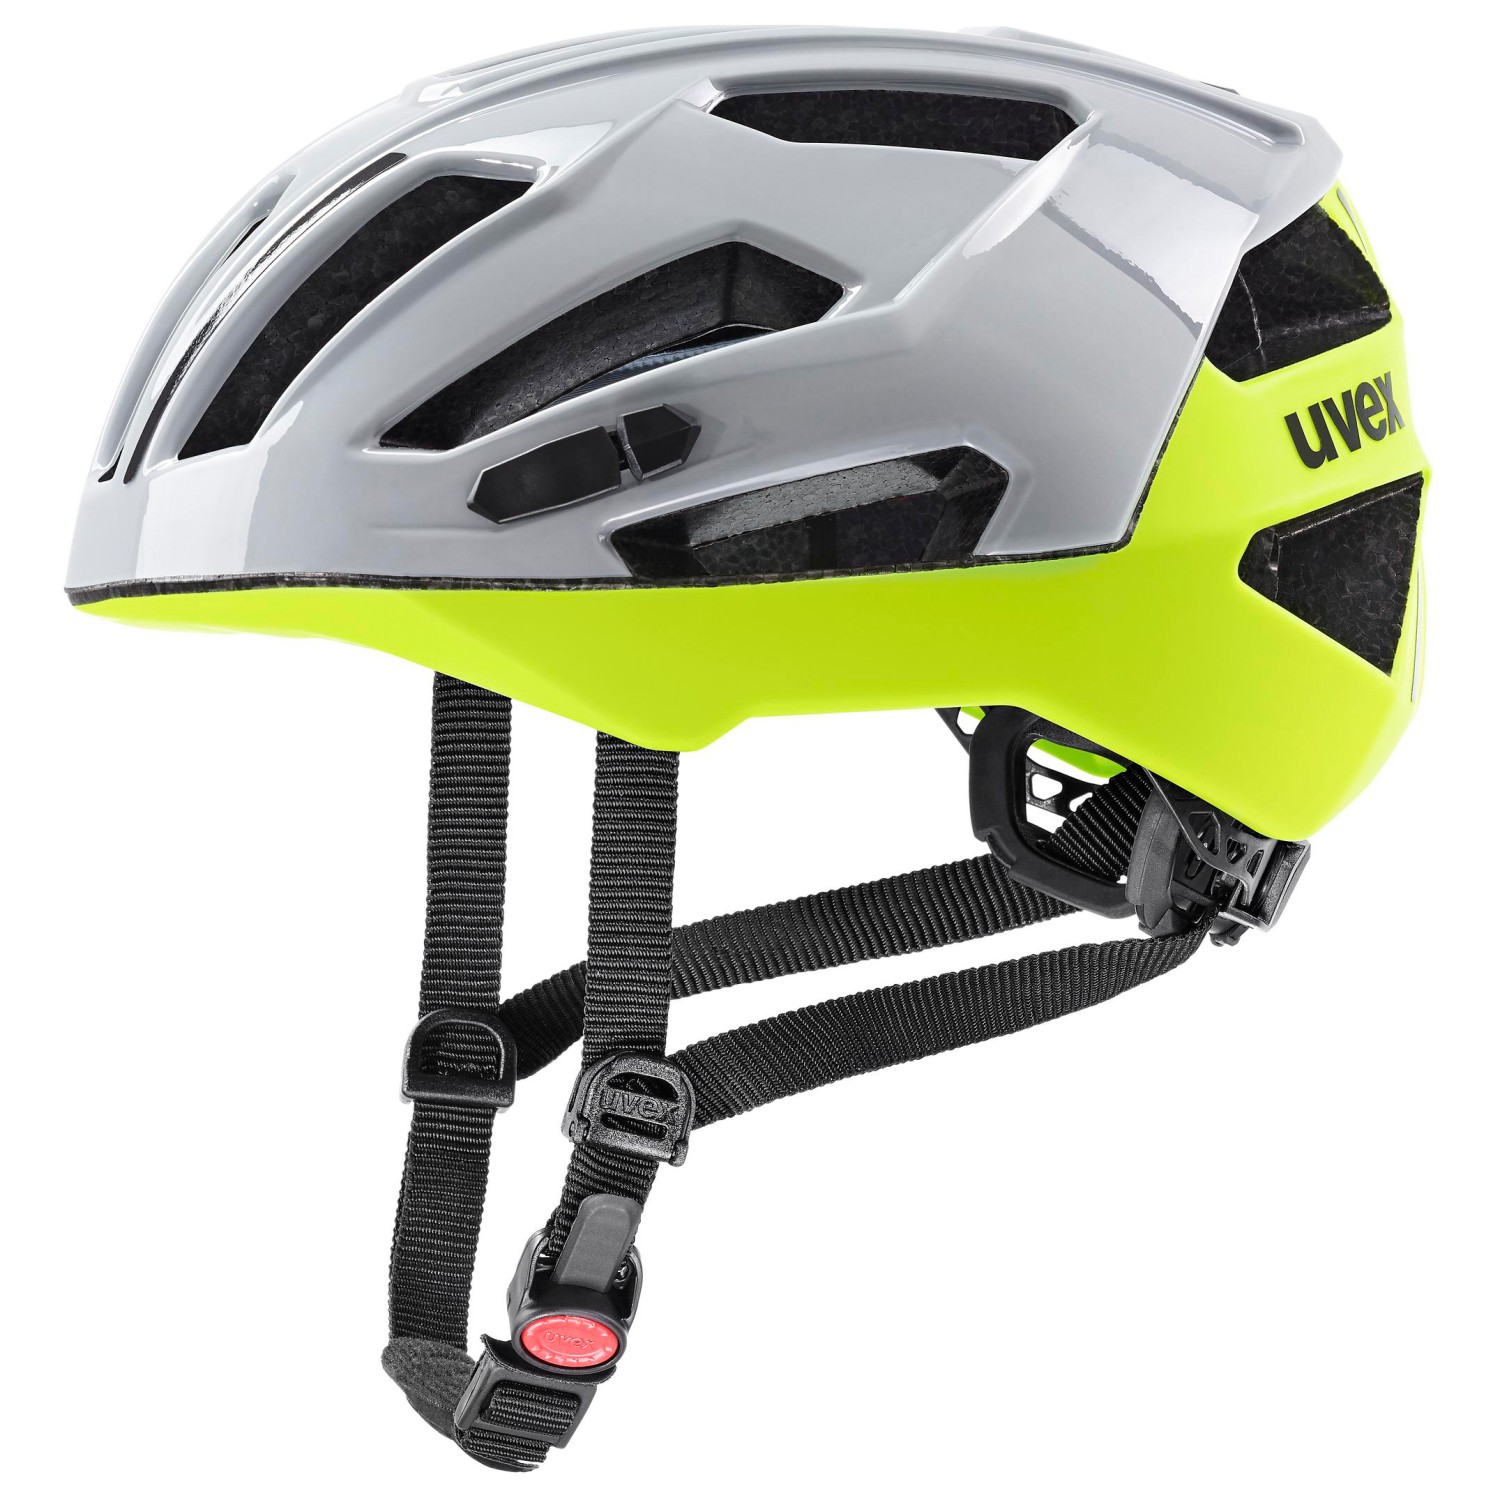 Велосипедный шлем Uvex Gravel X, цвет Rhino/Neon Yellow шлем велосипедный с вентиляционными отверстиями с фонарем 57 62 см yxe009 rockbros